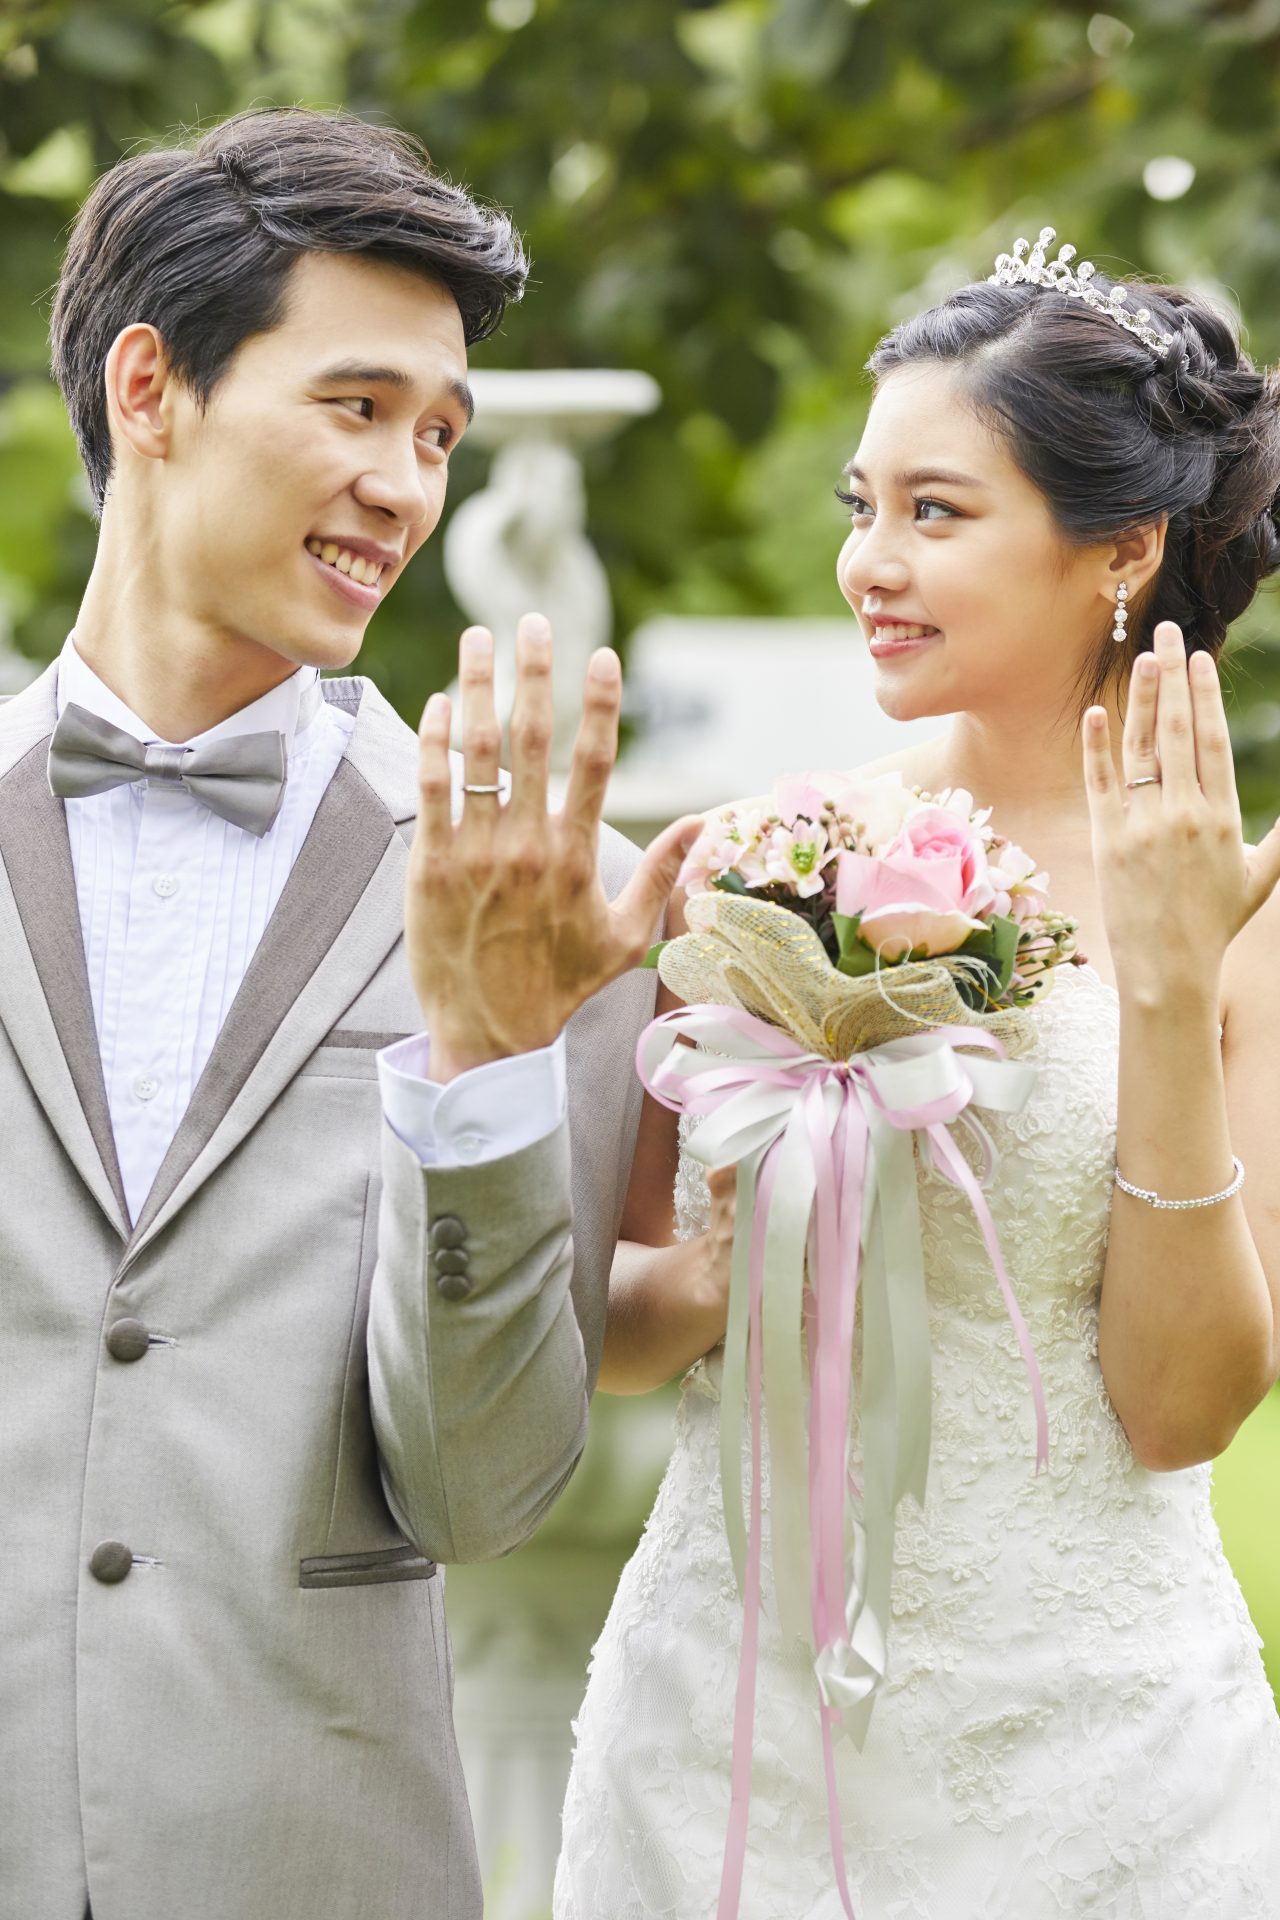 Chiếc nhẫn cưới là biểu tượng của tình yêu và hạnh phúc vĩnh viễn của đôi uyên ương. Hãy xem bức ảnh liên quan để cảm nhận sự ấm áp và hoàn hảo của thiết kế nhẫn cưới.